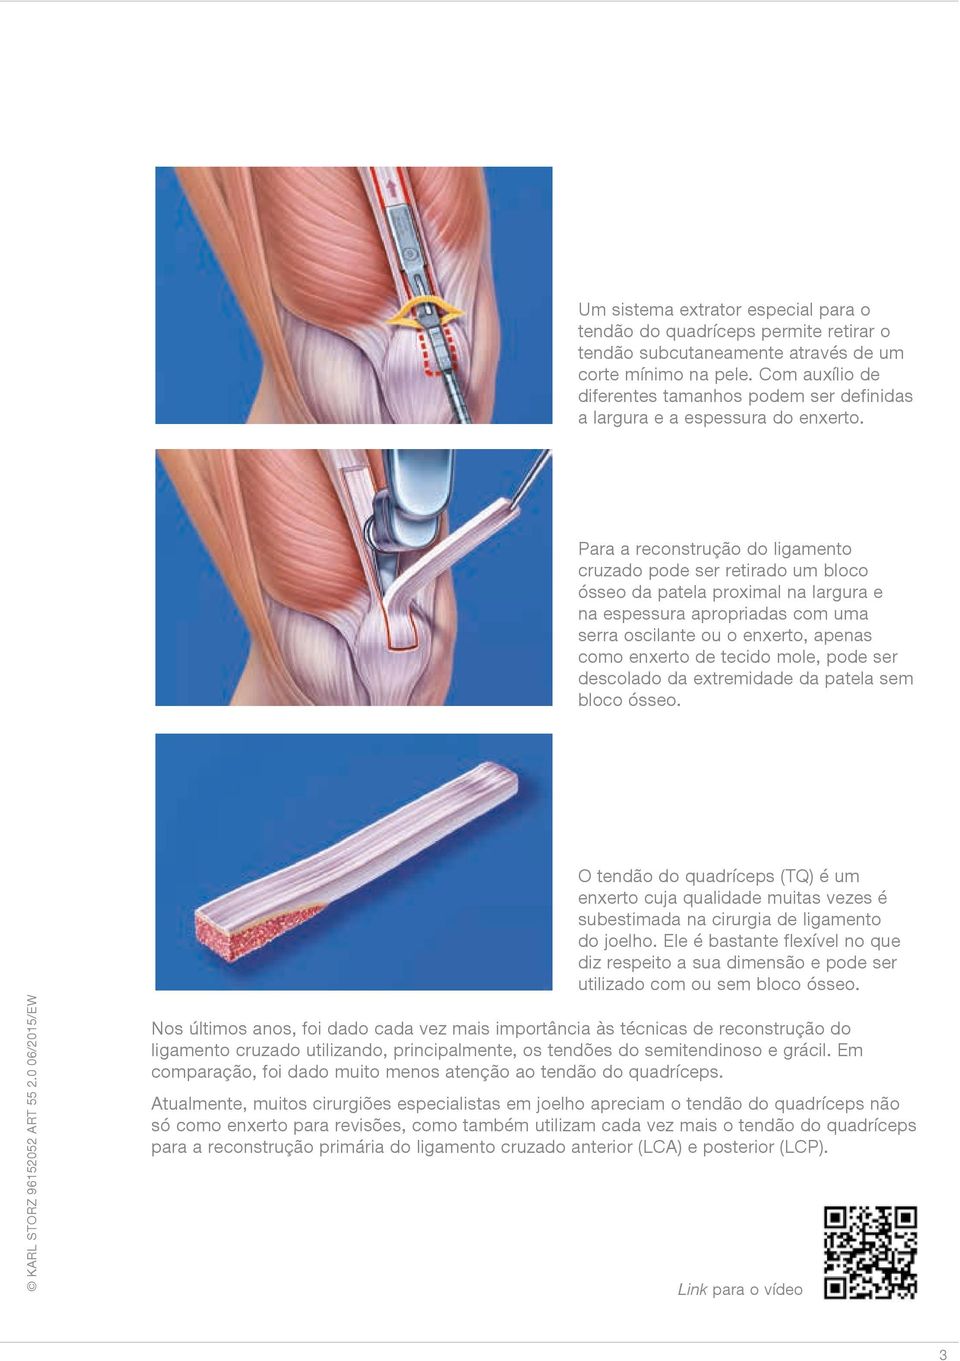 Para a reconstrução do ligamento cruzado pode ser retirado um bloco ósseo da patela proximal na largura e na espessura apropriadas com uma serra oscilante ou o enxerto, apenas como enxerto de tecido